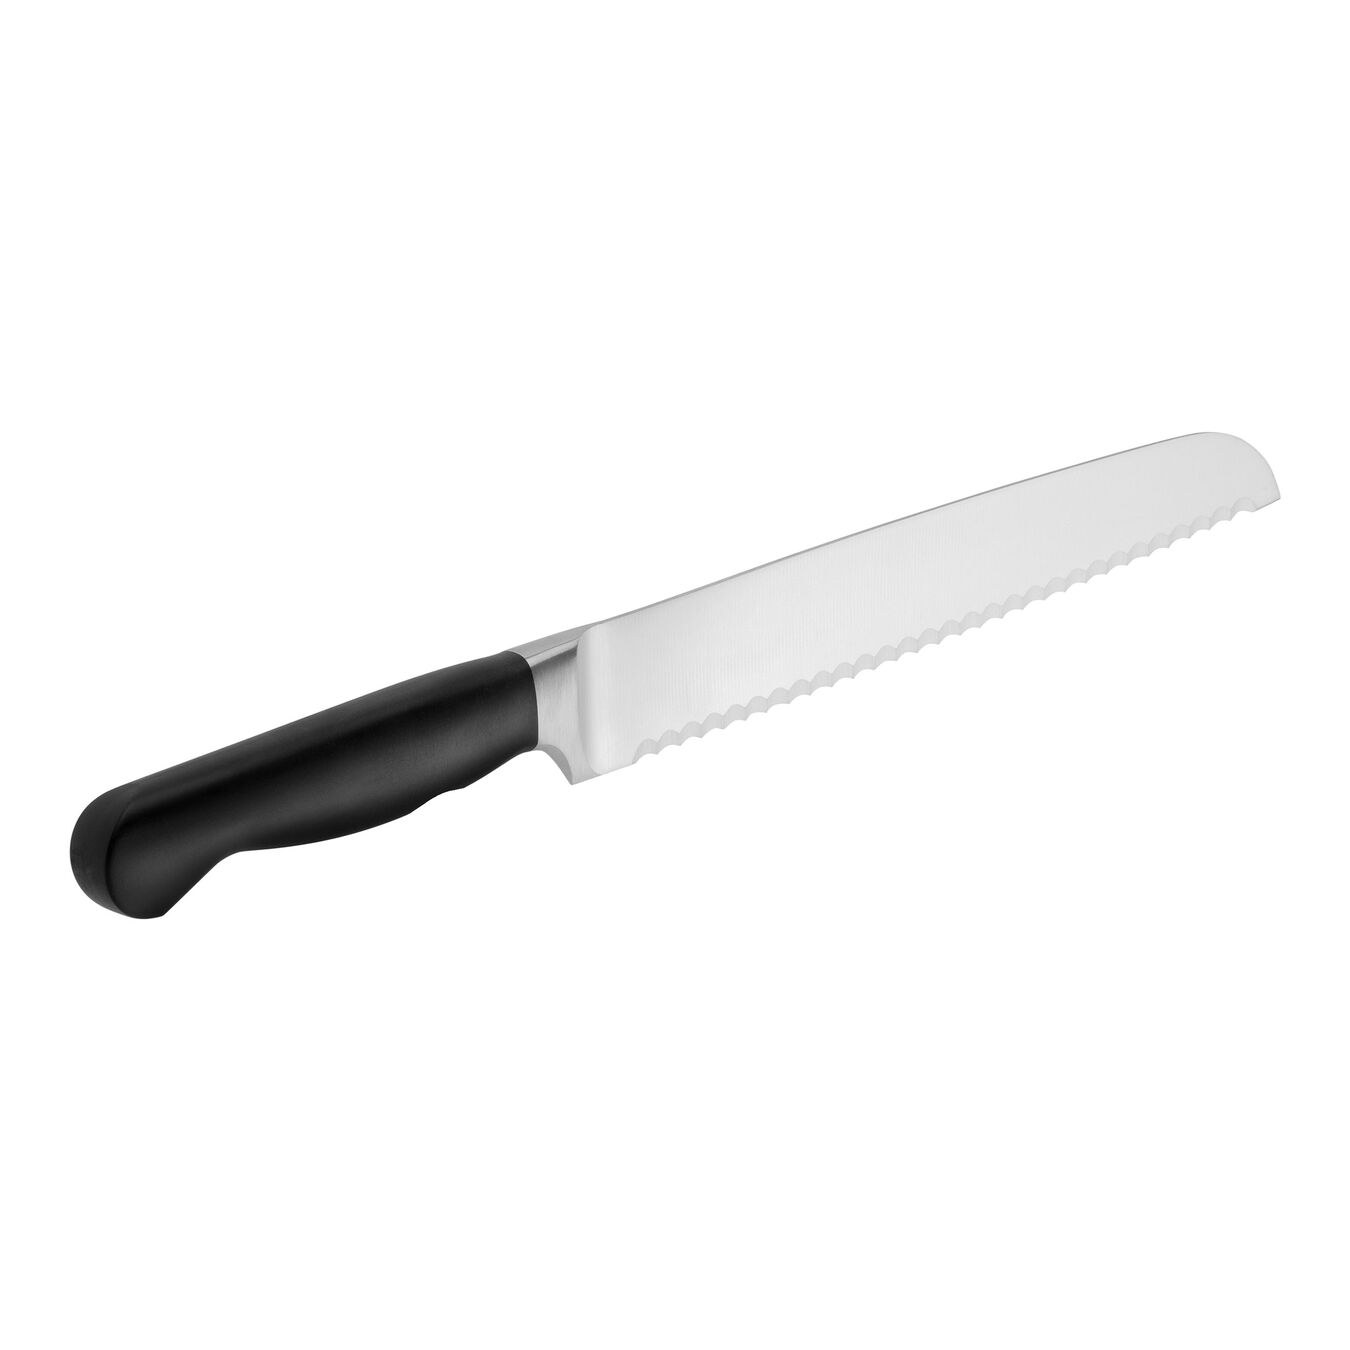 Cuchillo para pan 20 cm, con sierra,,large 2